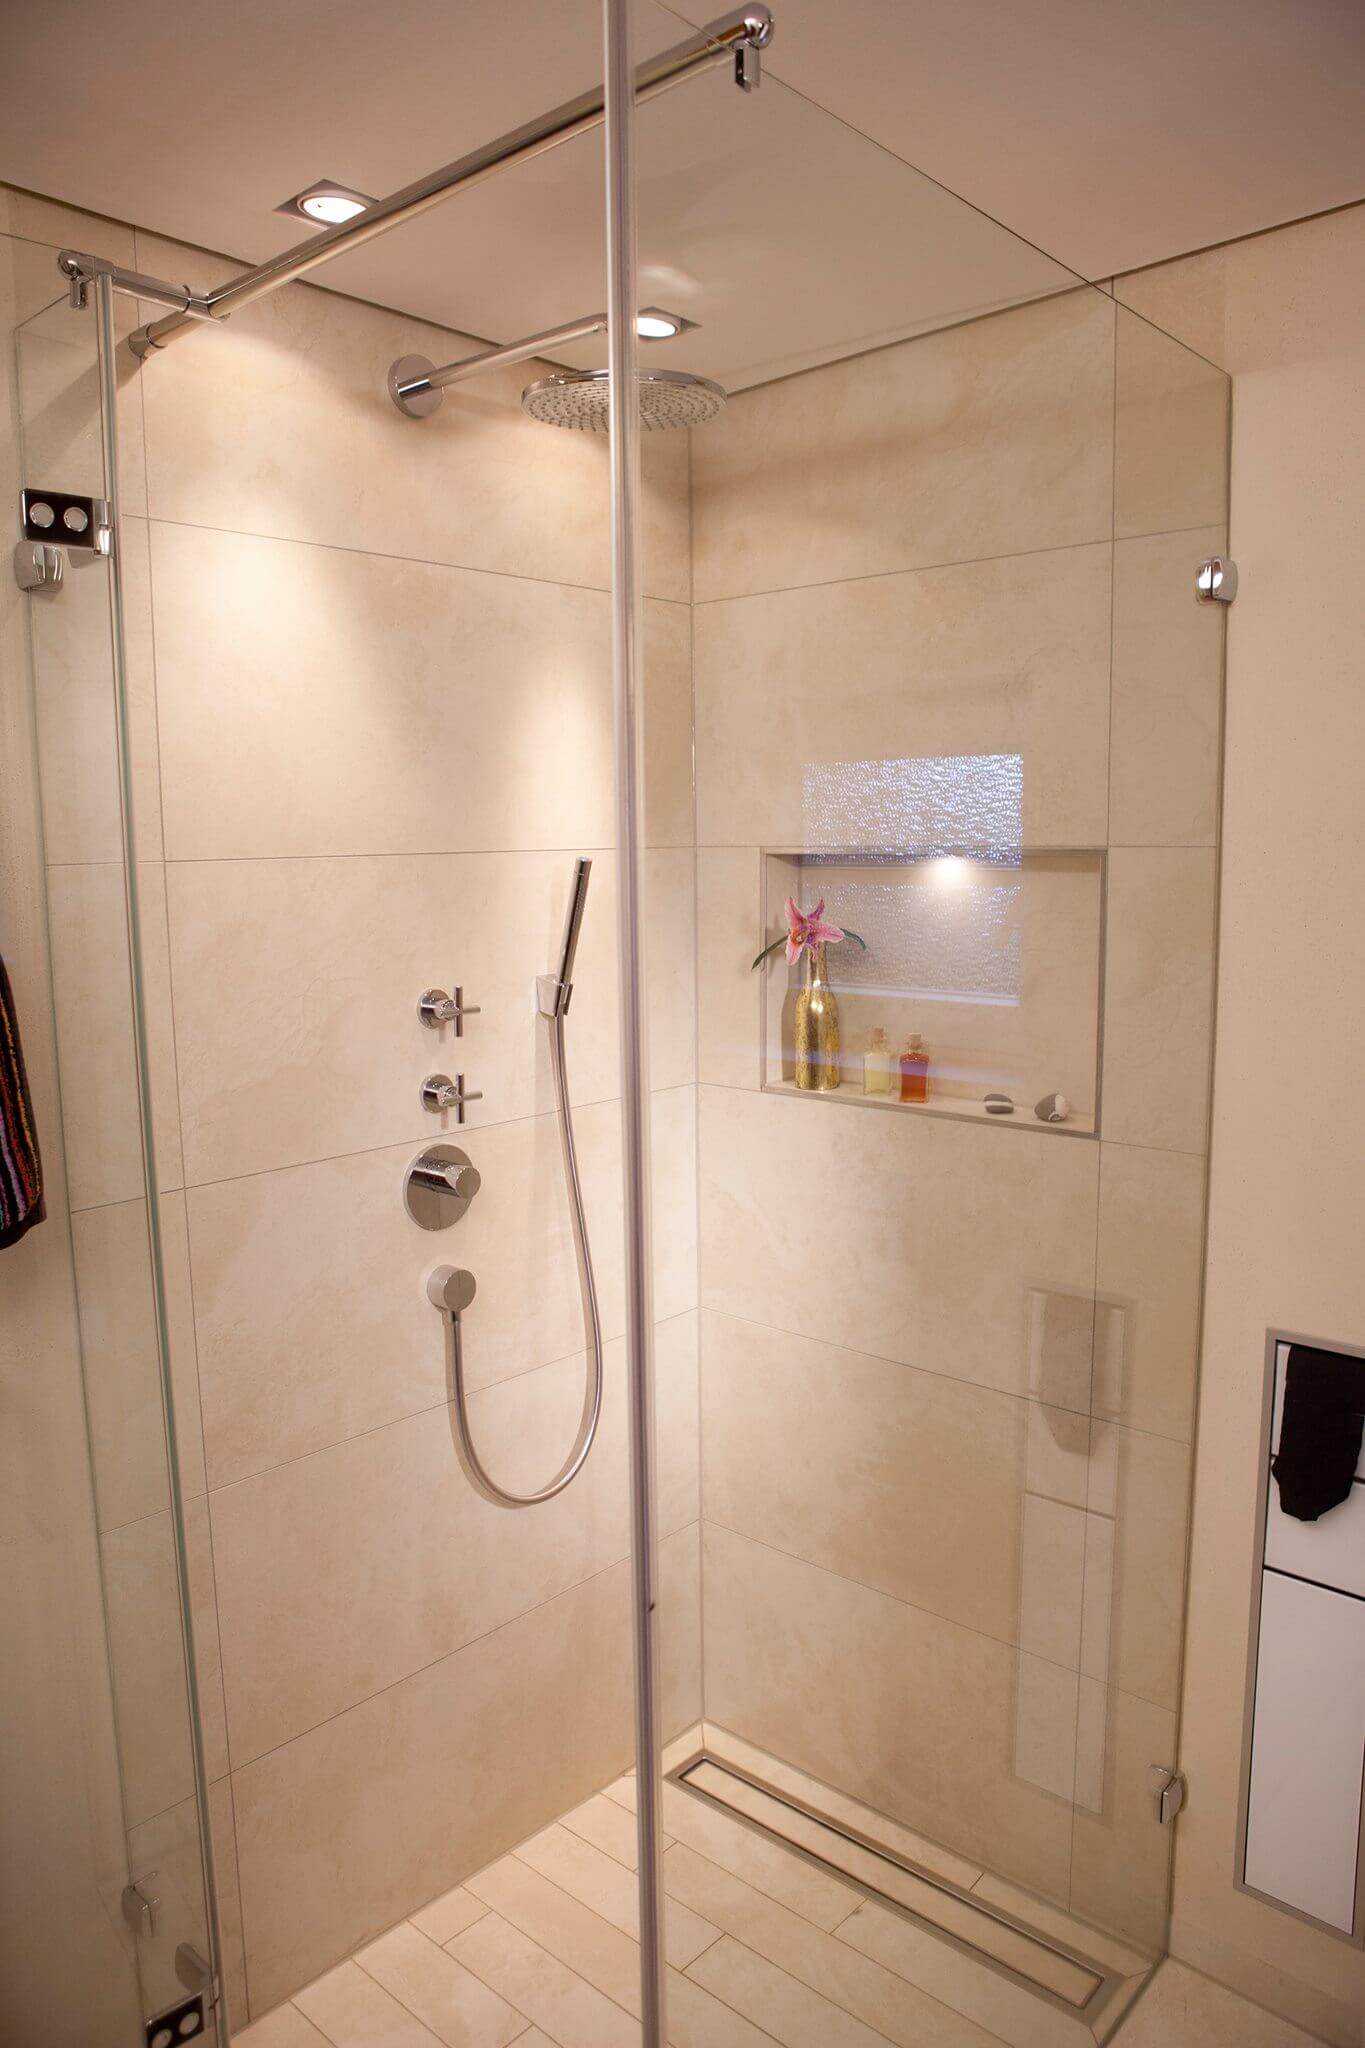 Gäste WC Design mit kleiner Dusche hinter Glastrennwand mit Vola Armatur und Kopfbrause